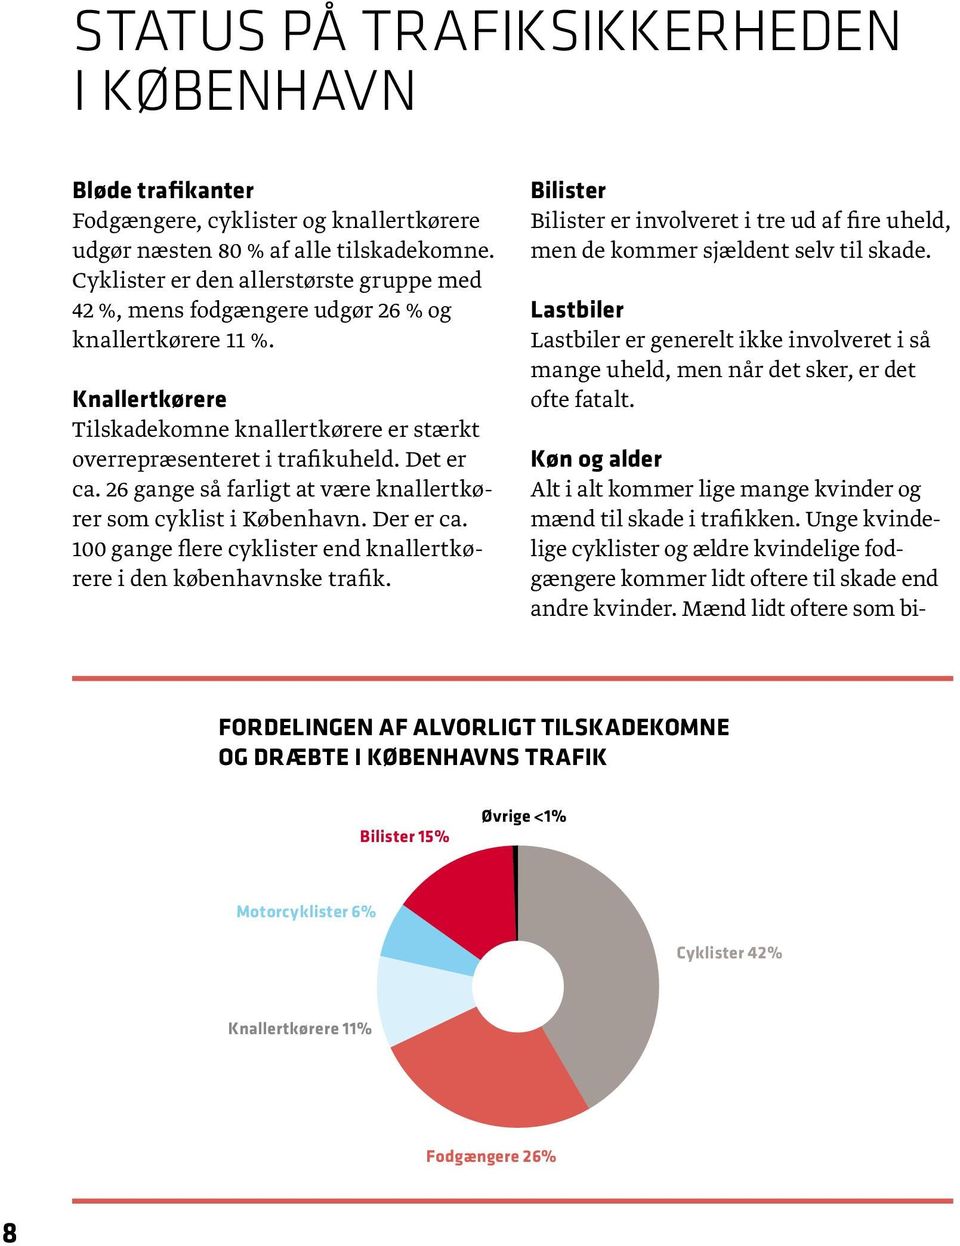 26 gange så farligt at være knallertkører som cyklist i København. Der er ca. 100 gange flere cyklister end knallertkørere i den københavnske trafik.